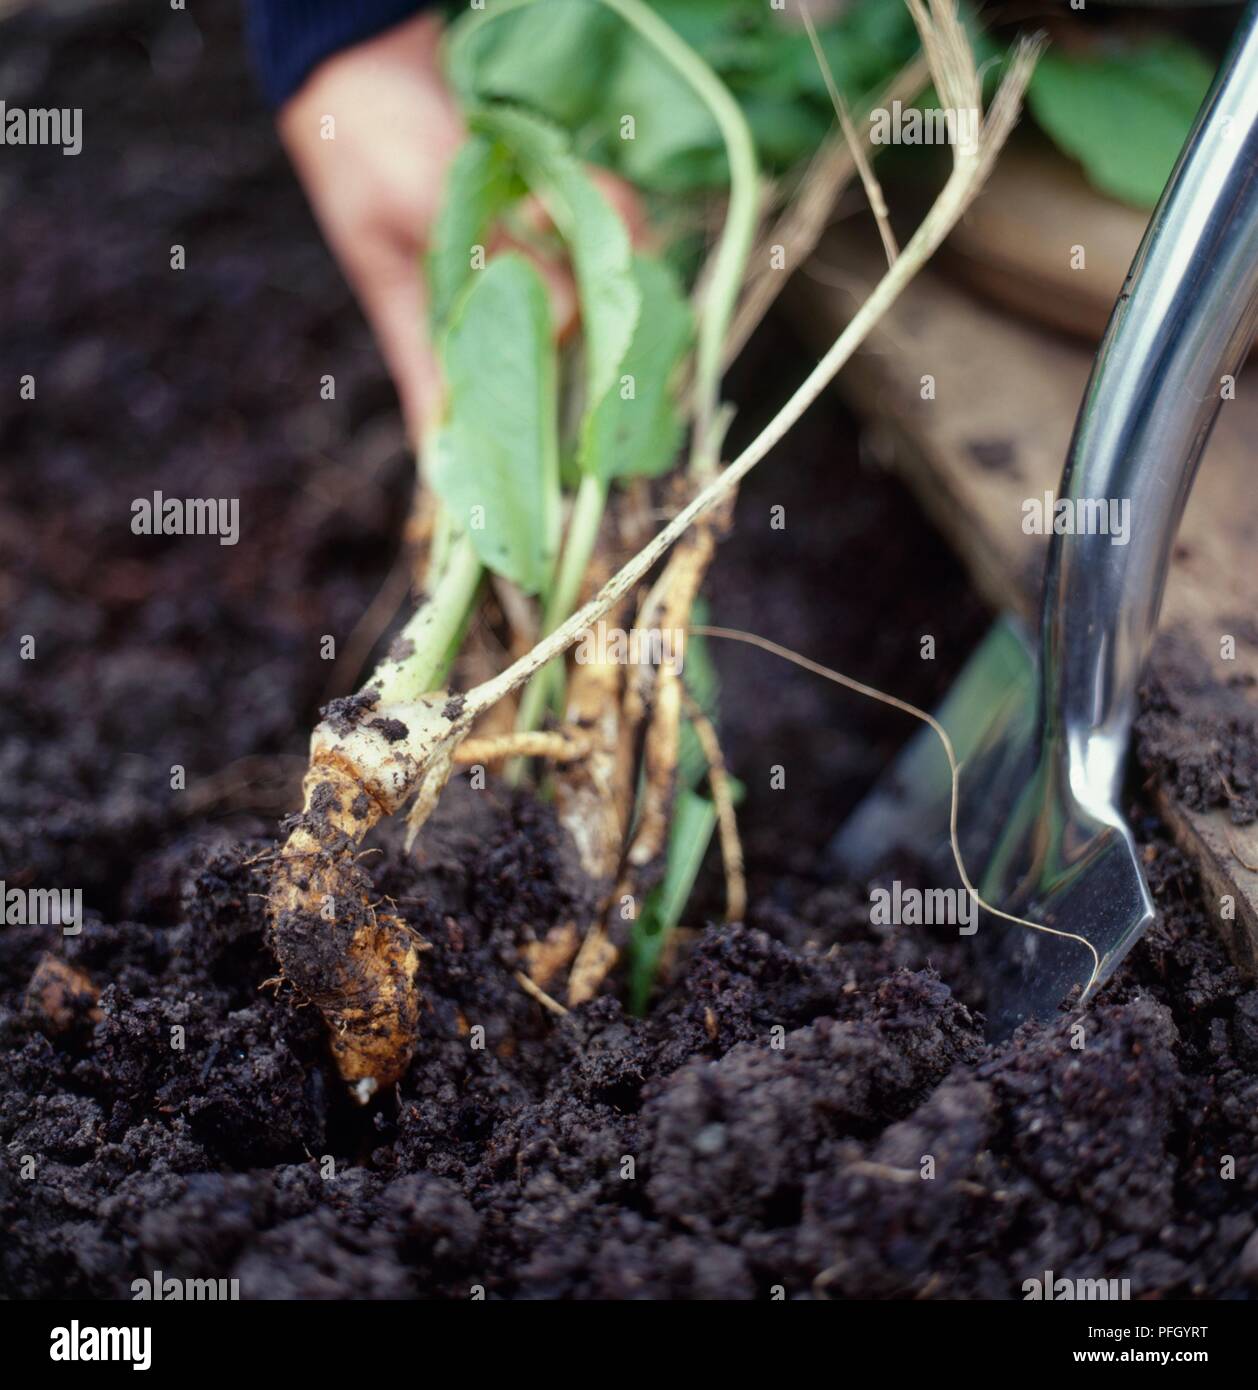 Rimozione coltivati biologicamente rafano dal suolo bagnato, utilizzando cazzuola, close-up Foto Stock